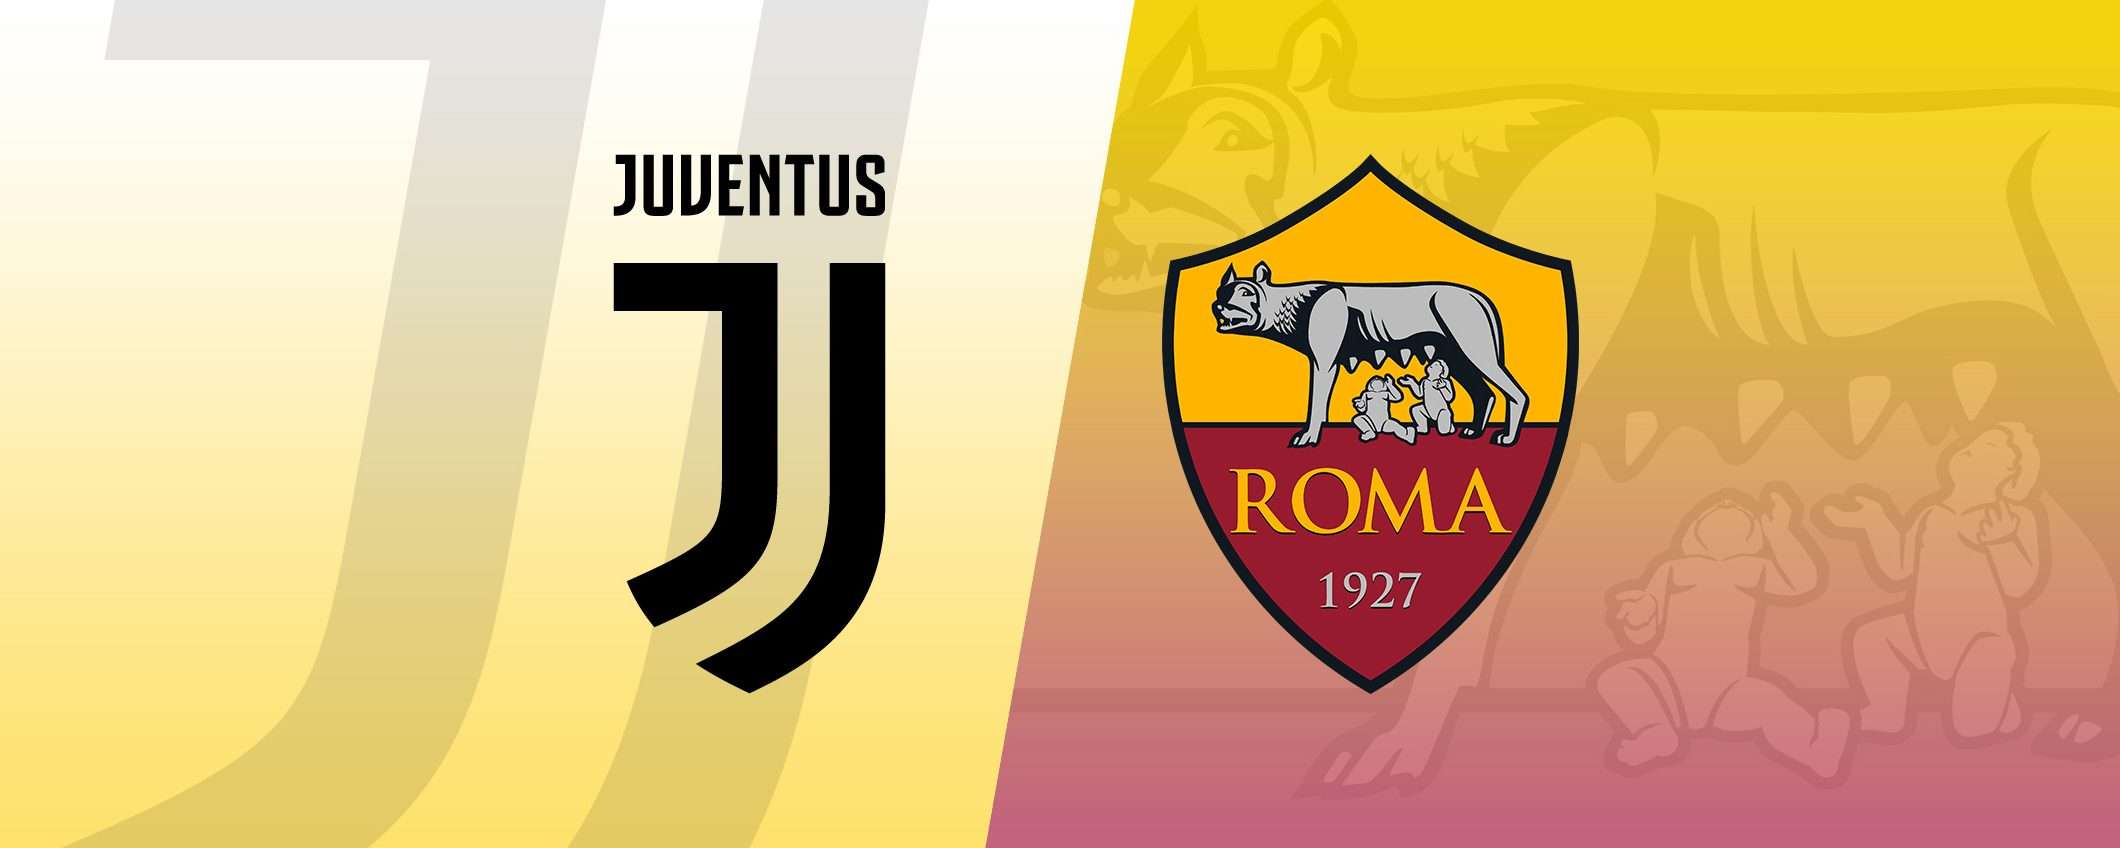 Juventus-Roma: formazioni e come vederla in streaming